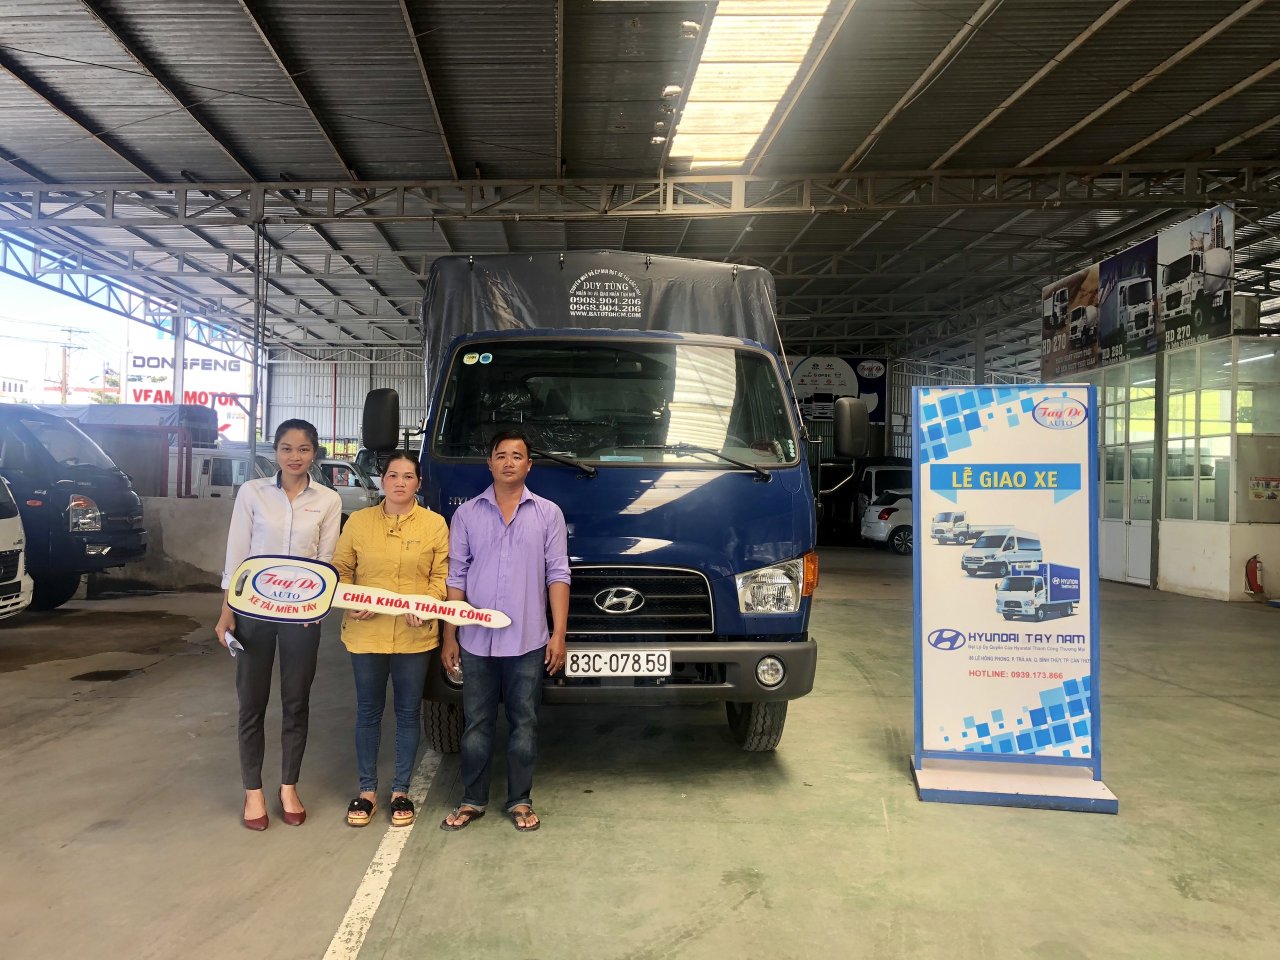 chị Thúy ở Đồng Tháp với nhu cầu mua xe tải mui bạc đã quyết định chọn mua xe tải Hyundai tại Đại Lý Hyundai Miền Nam.